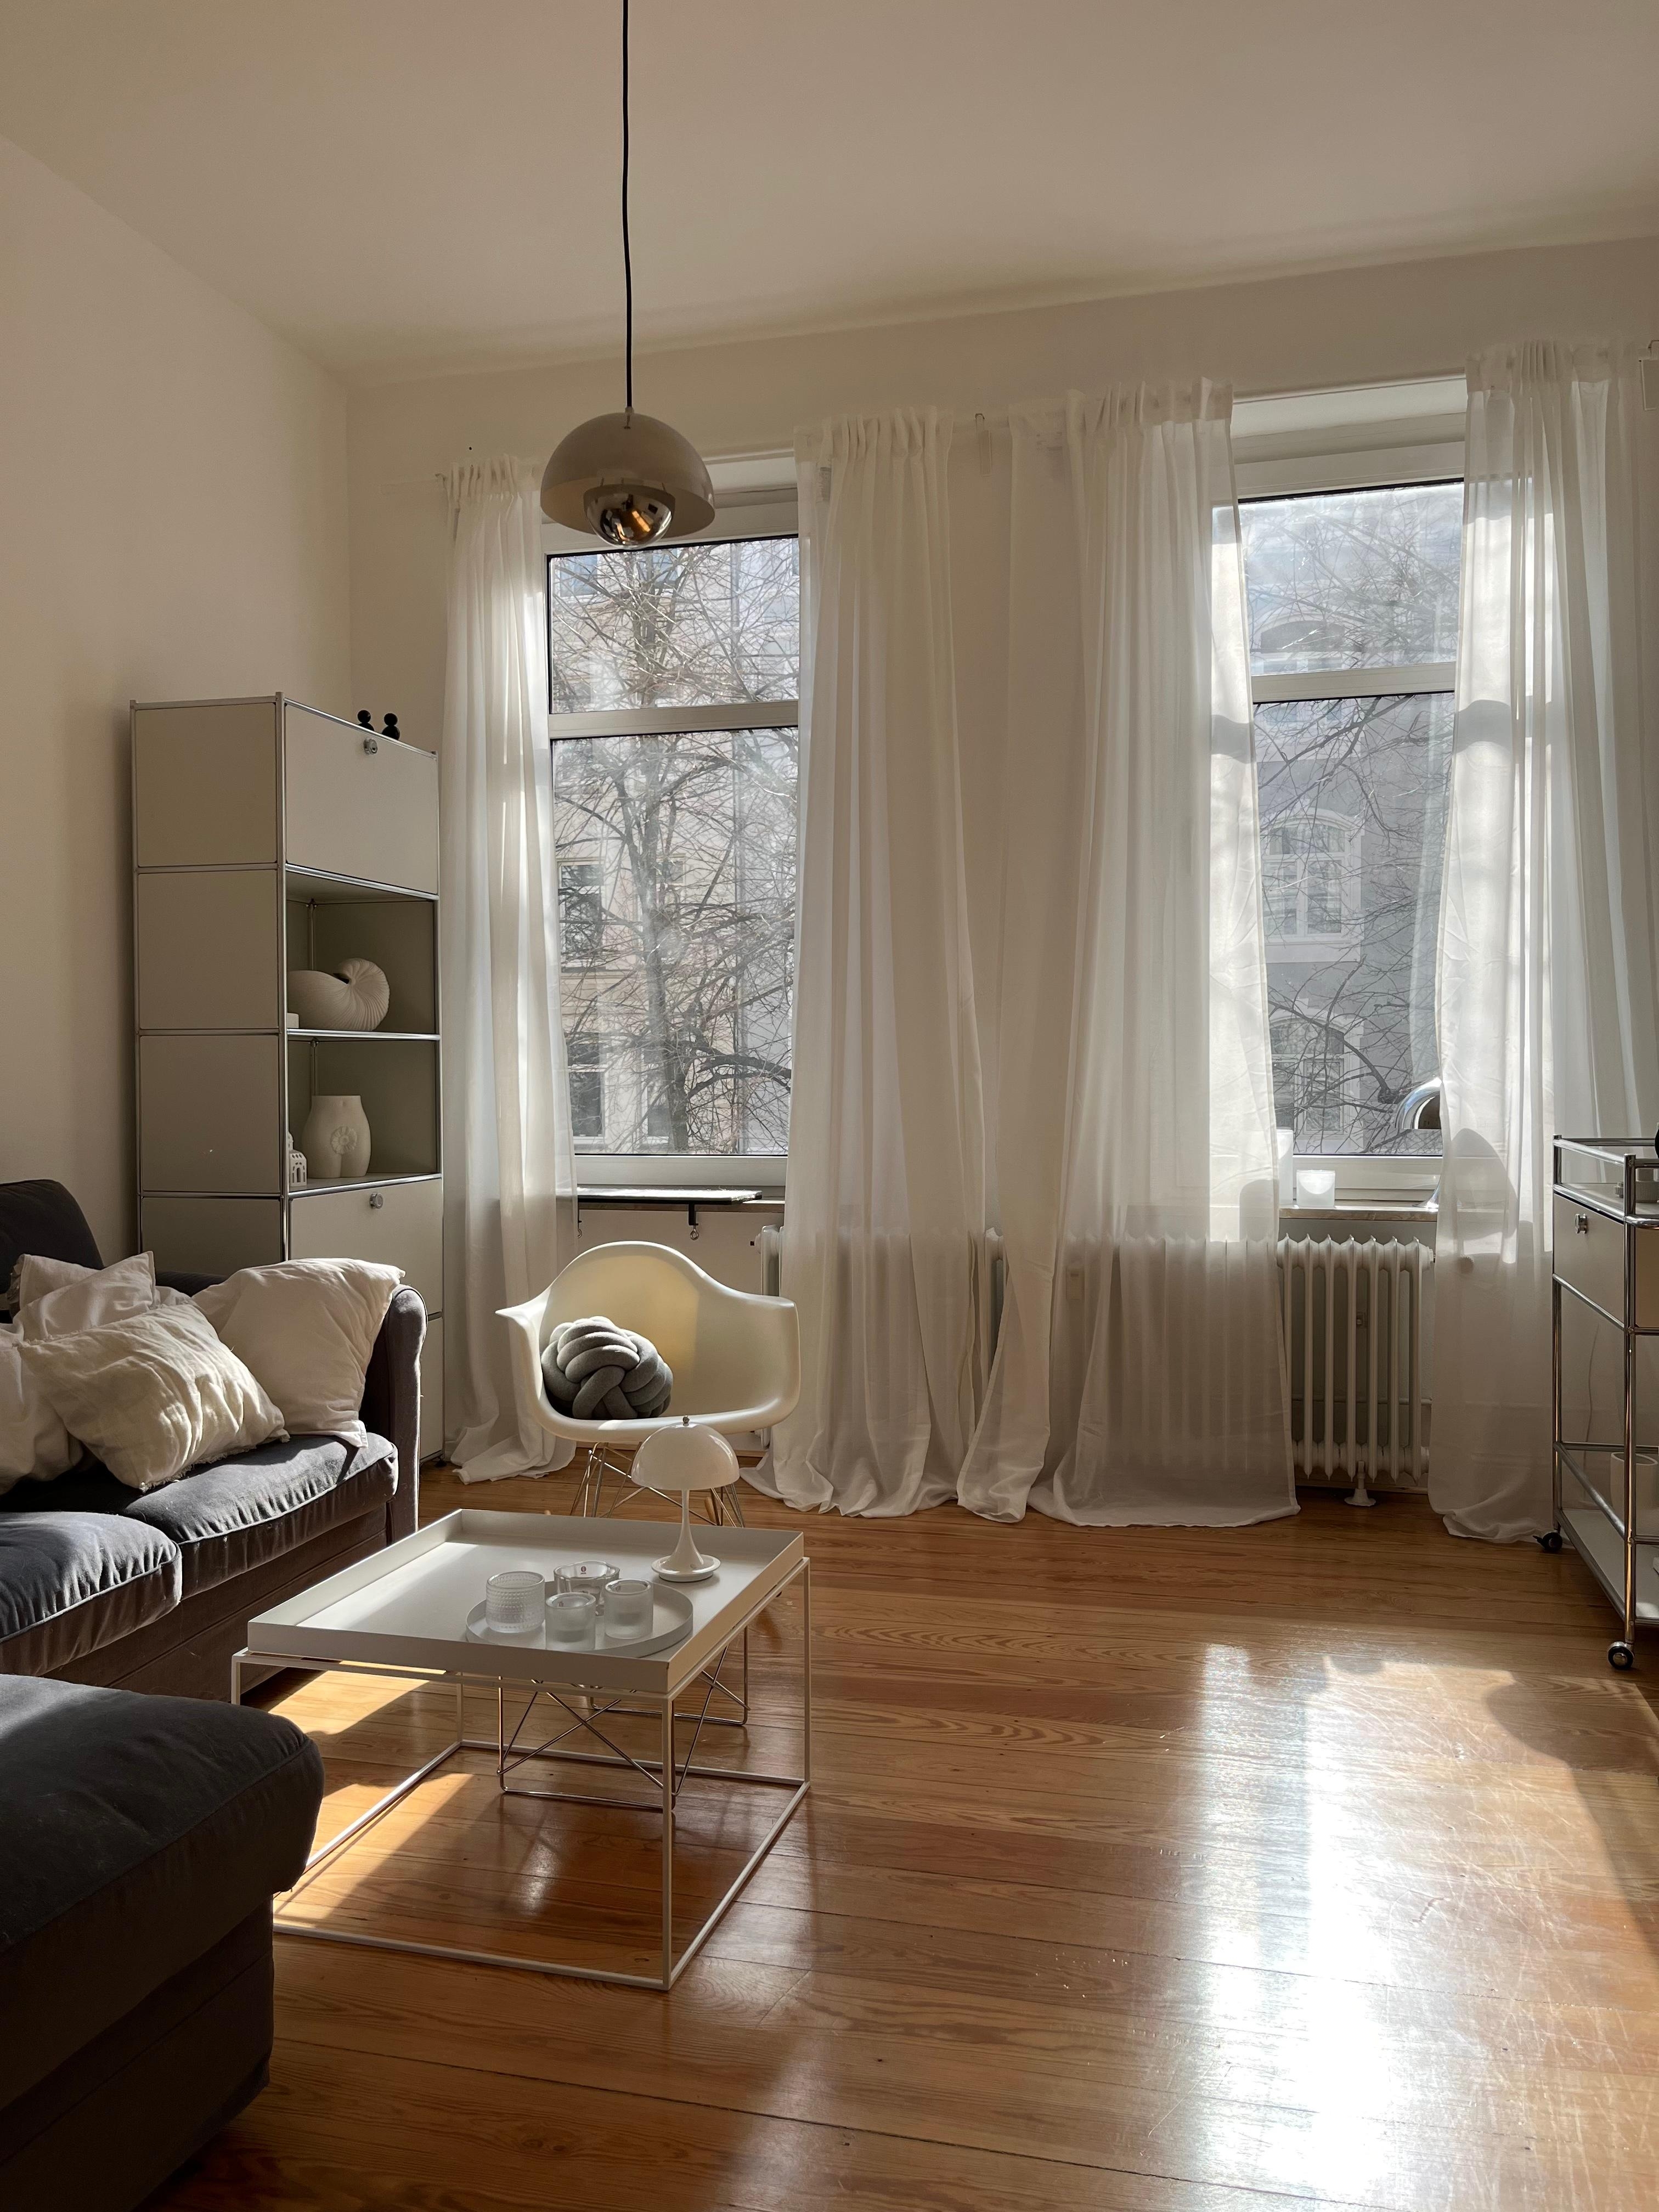 Hallo Sonne ☀️ #wohnzimmer #skandinavischwohnen #altbauwohnung #danishdesign